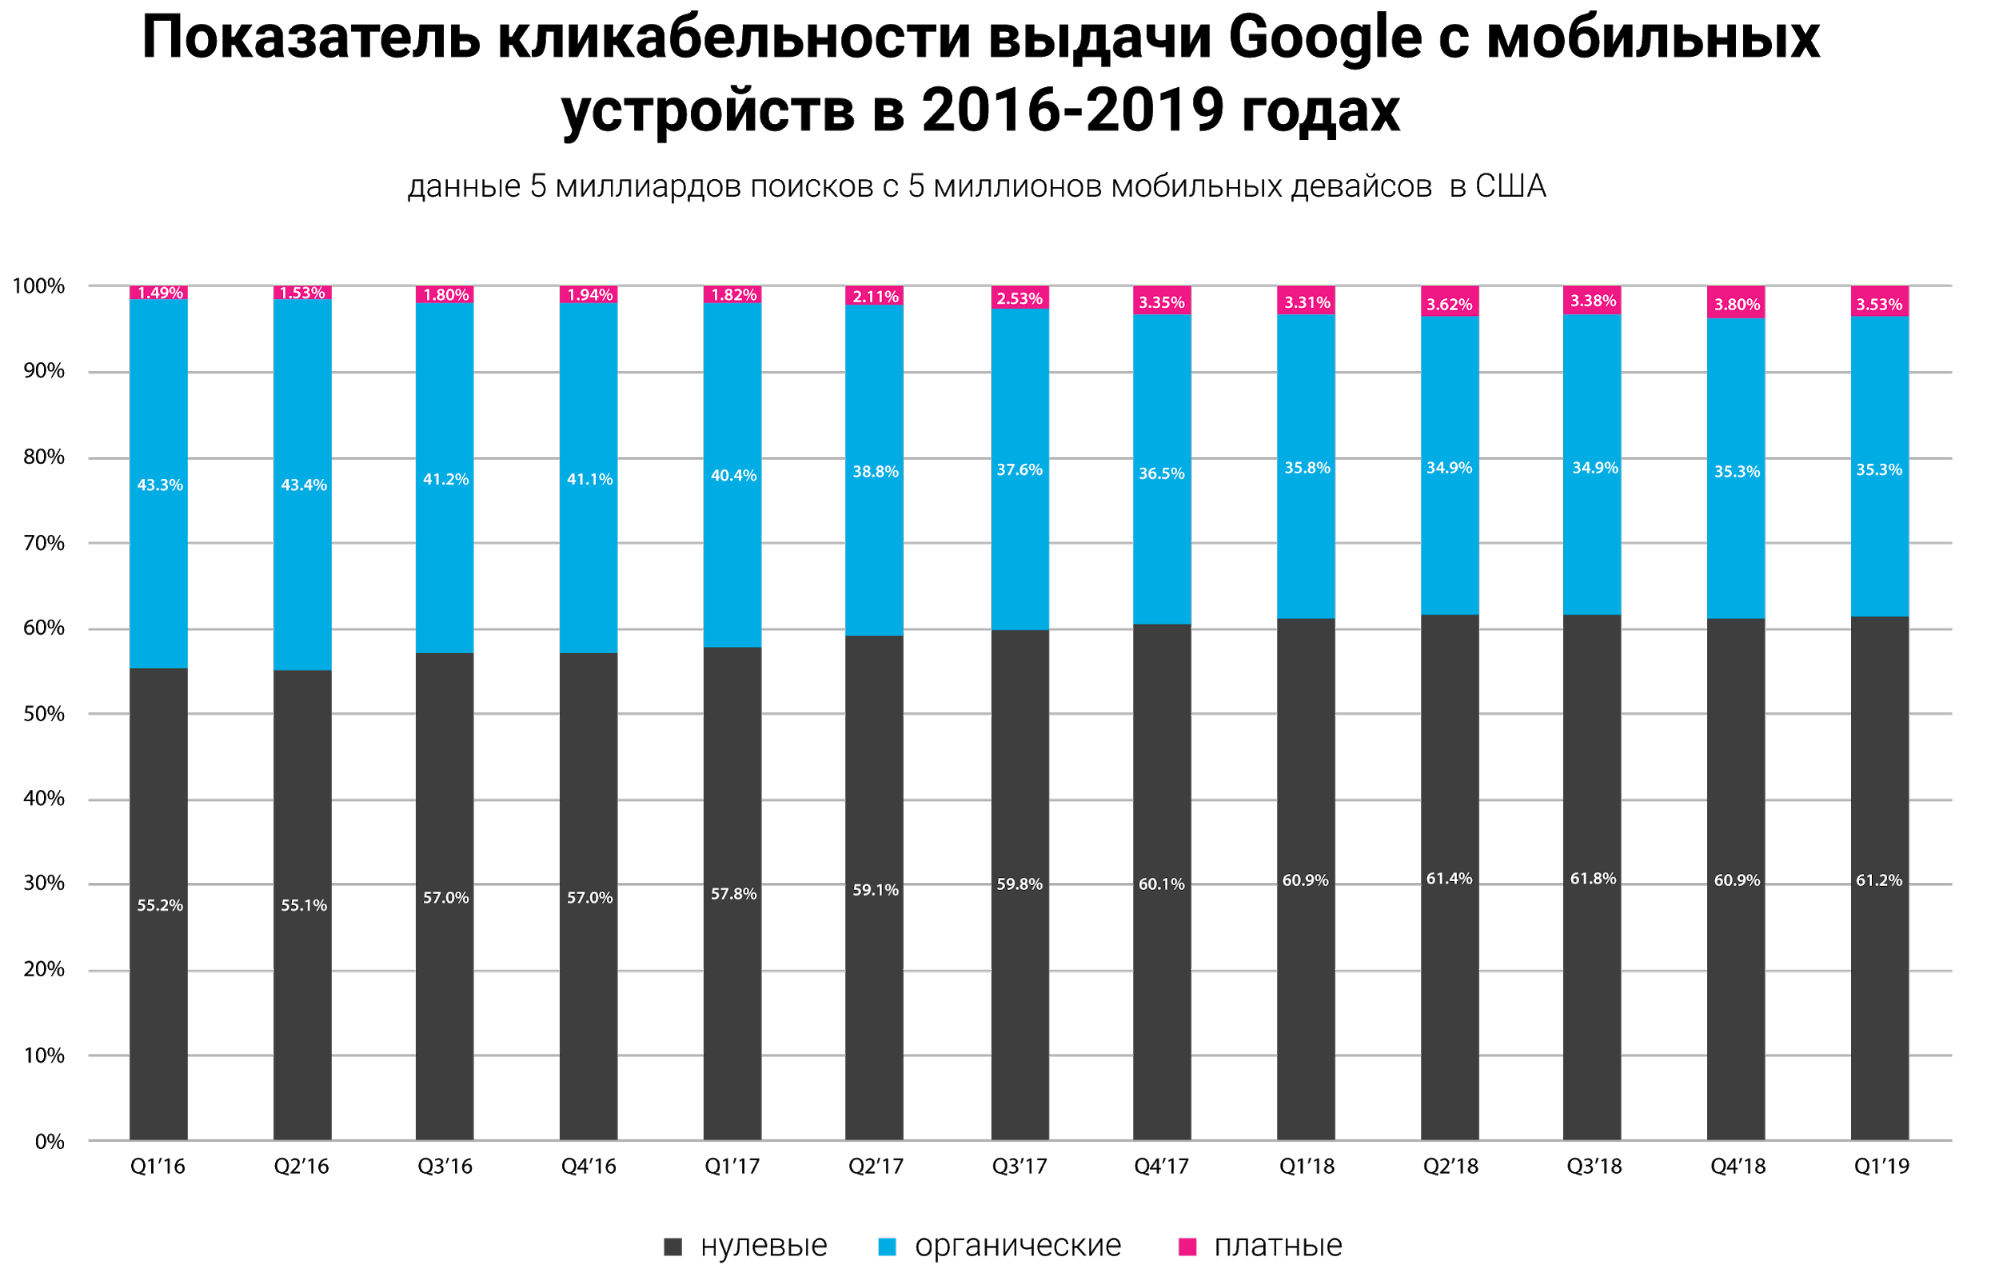 показатель кликабельности выдачи Гугл с мобильных устройств в 2016-2019 годах